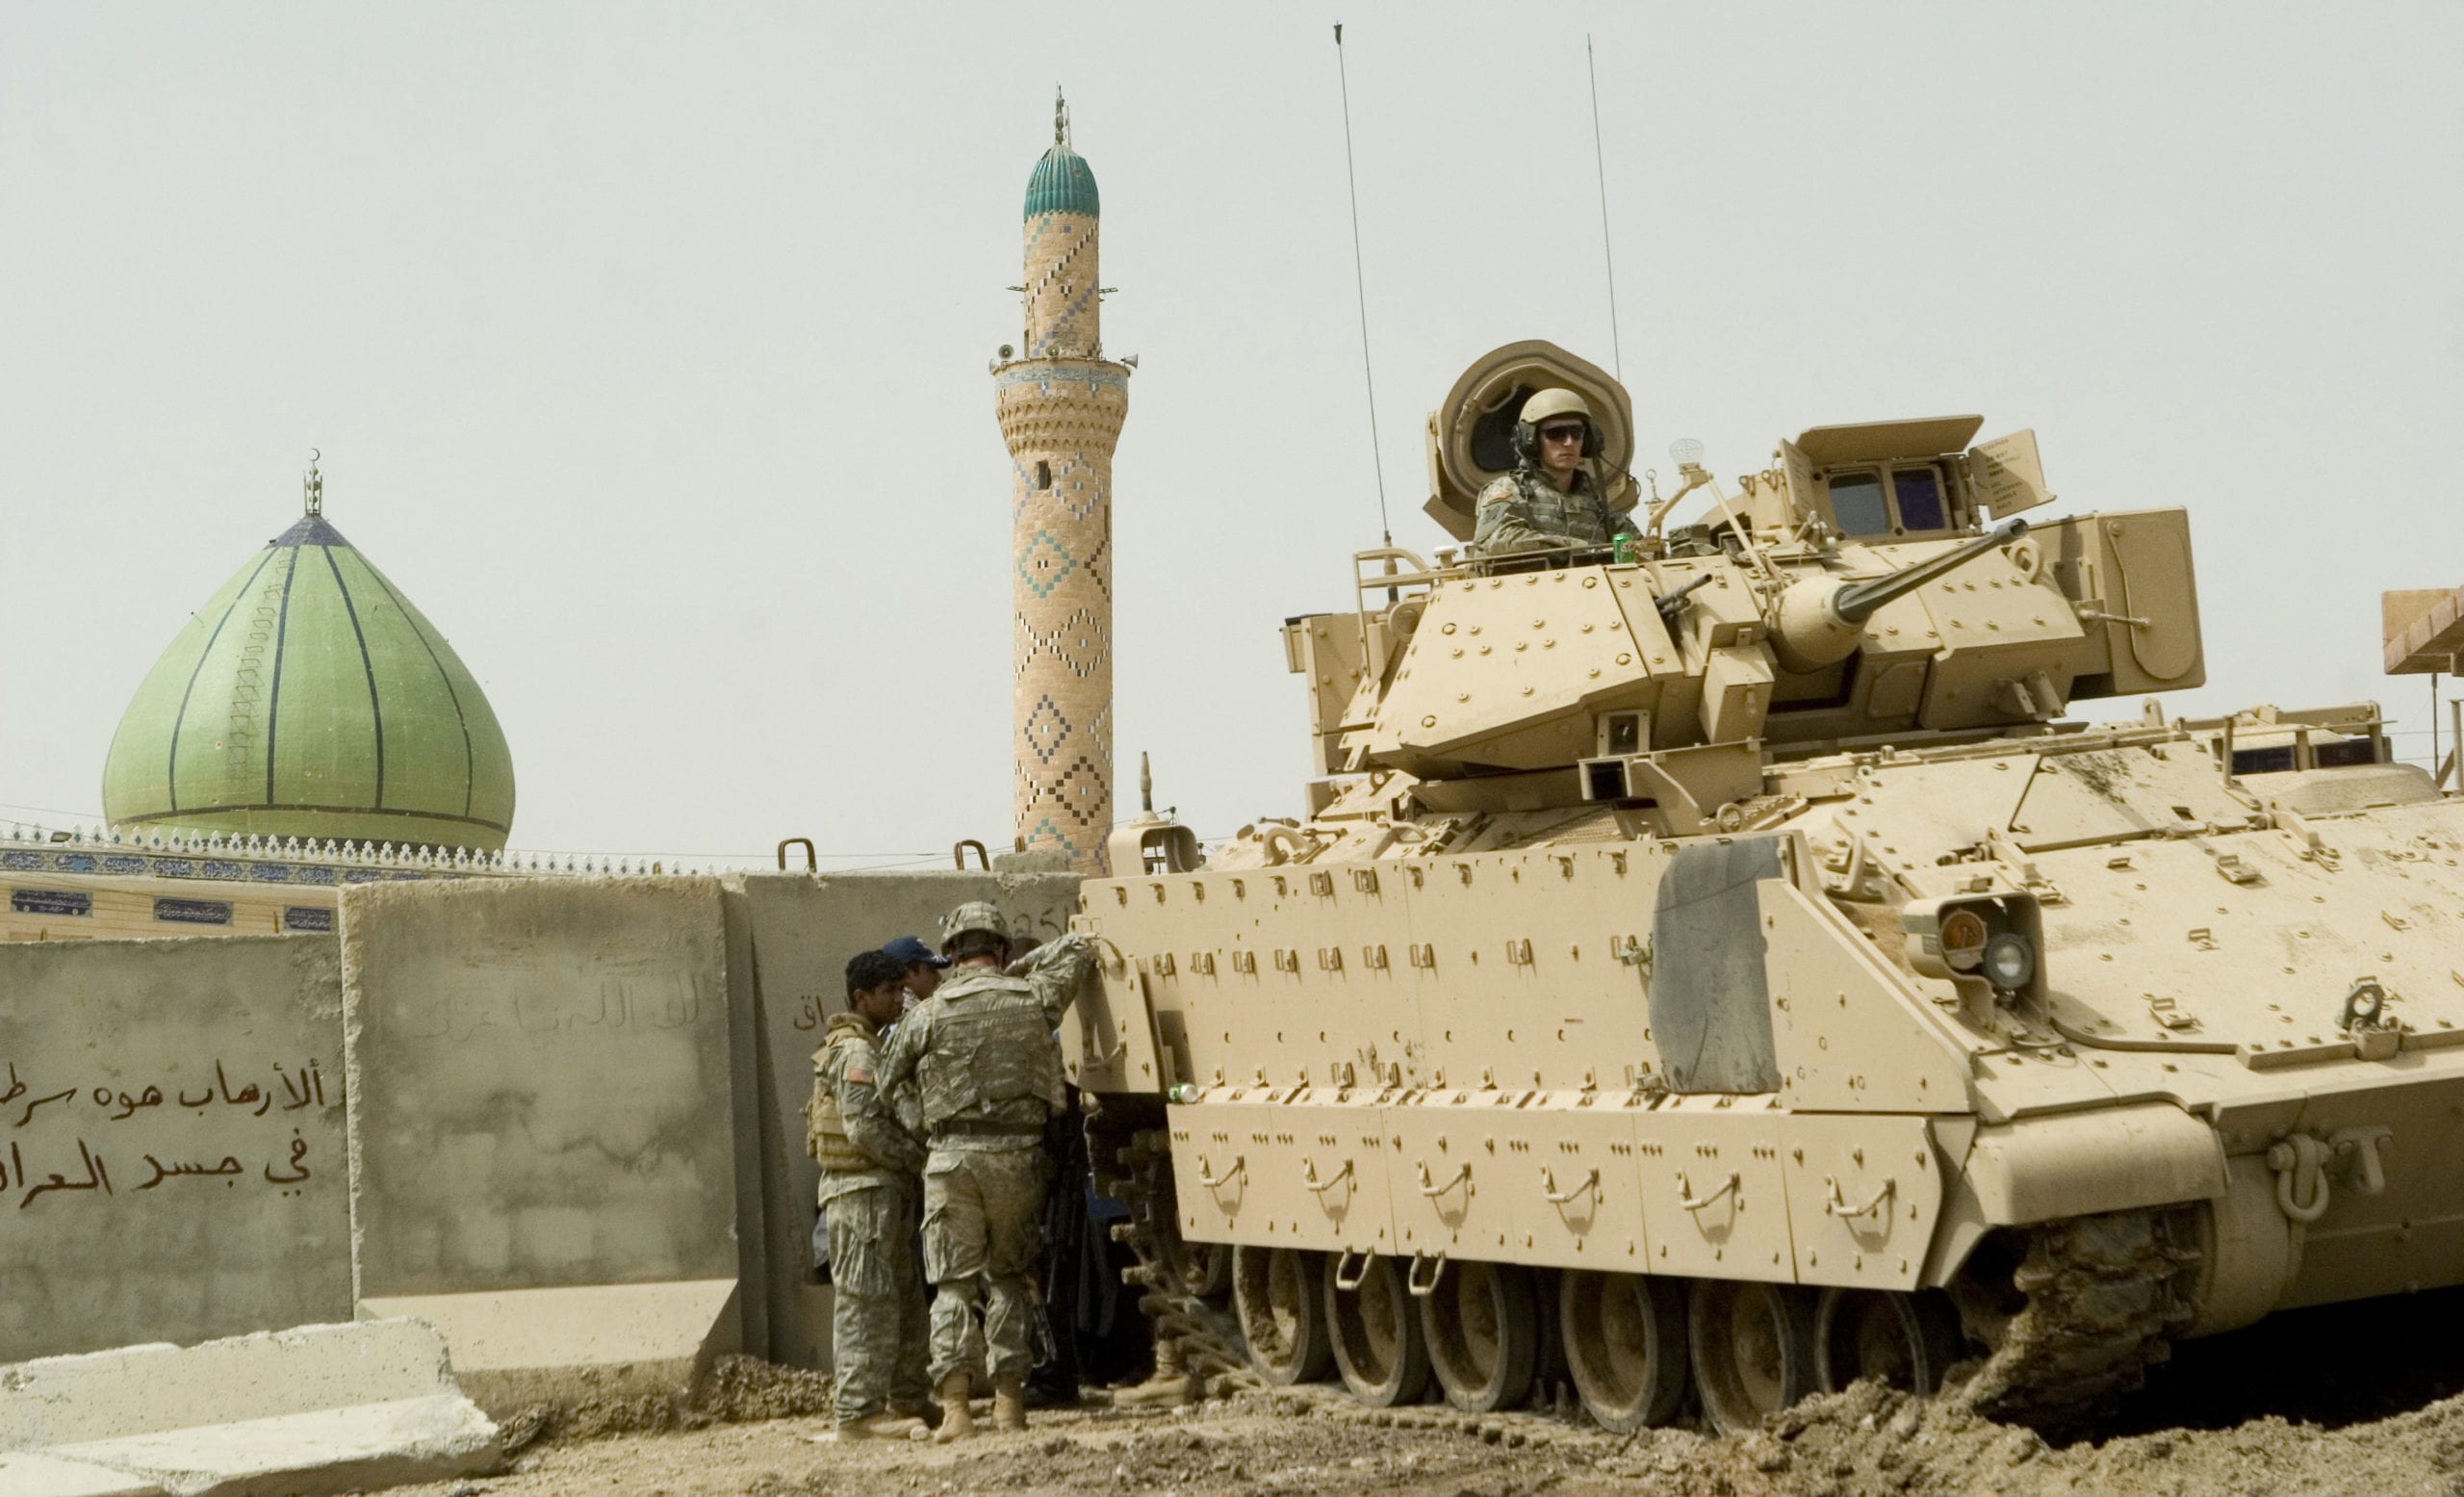 Le truppe USA in Iraq: un ospite indesiderato?